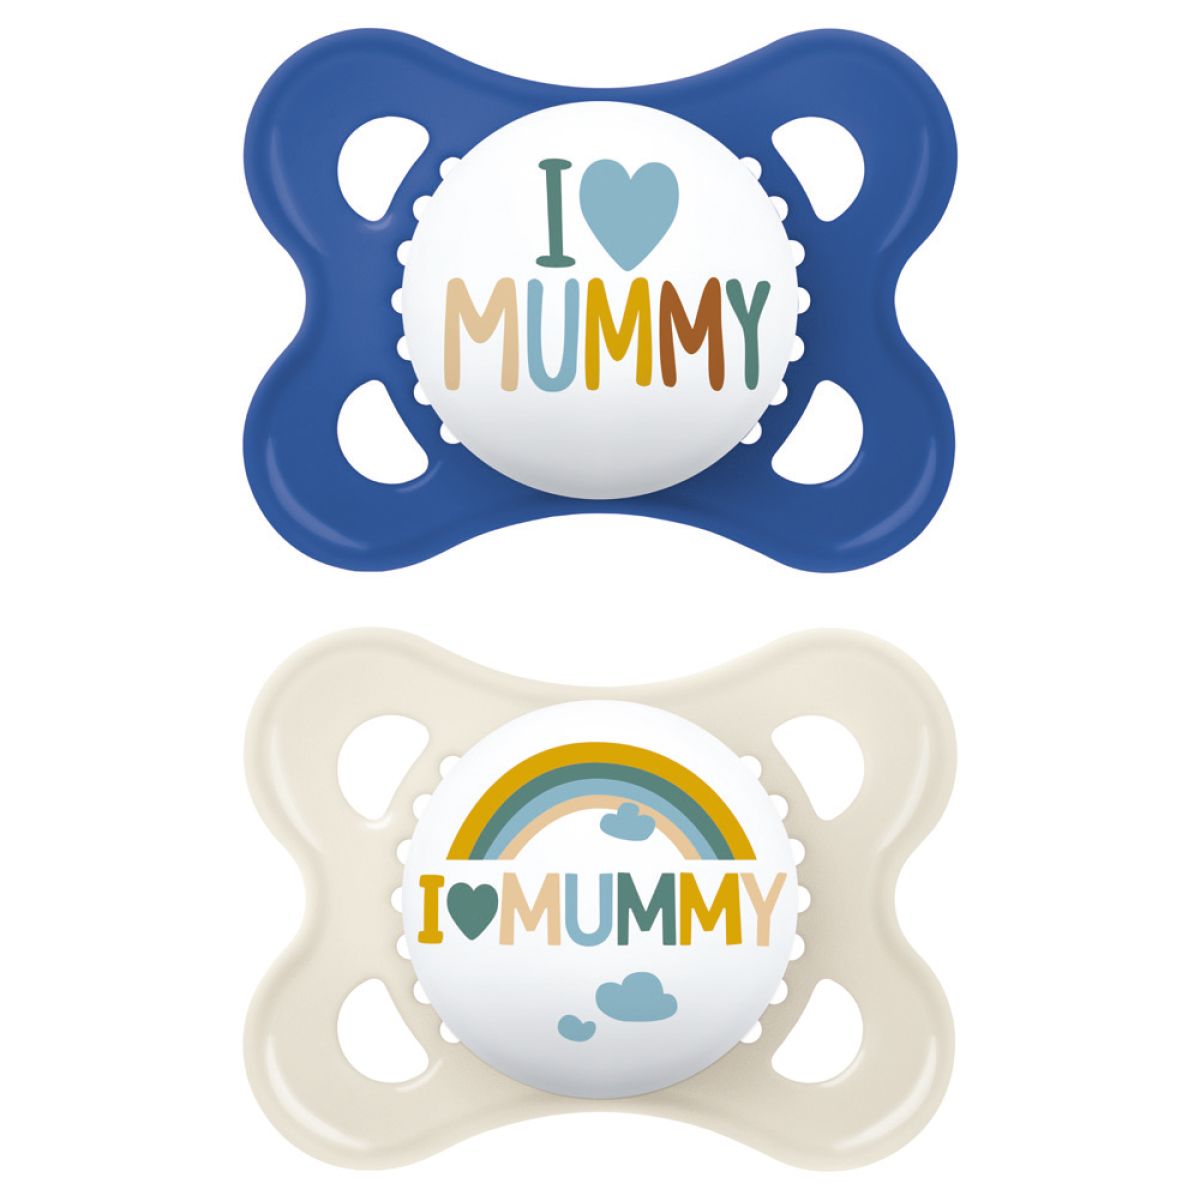 MAM Original Love Mummy - Pacifier